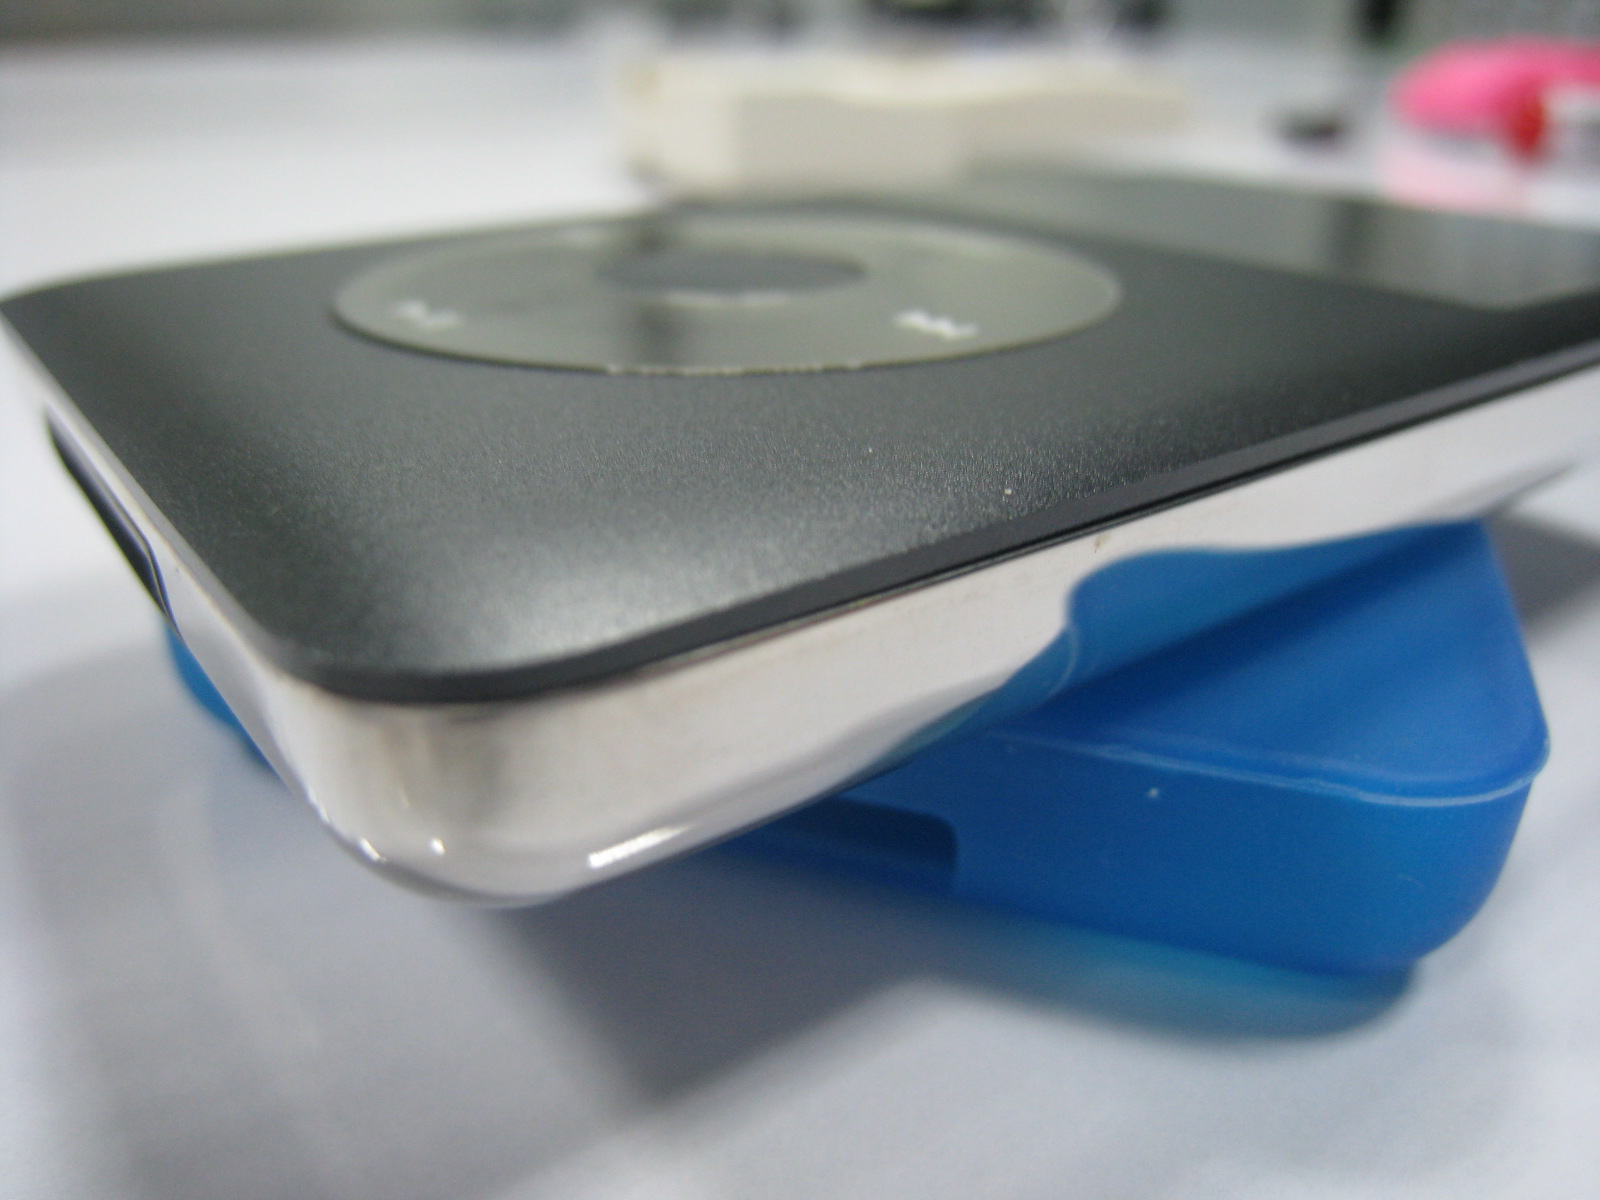 ขาย iPod classic 120gb - เว็บบอร์ดหูฟังมั่นคง munkonggadget